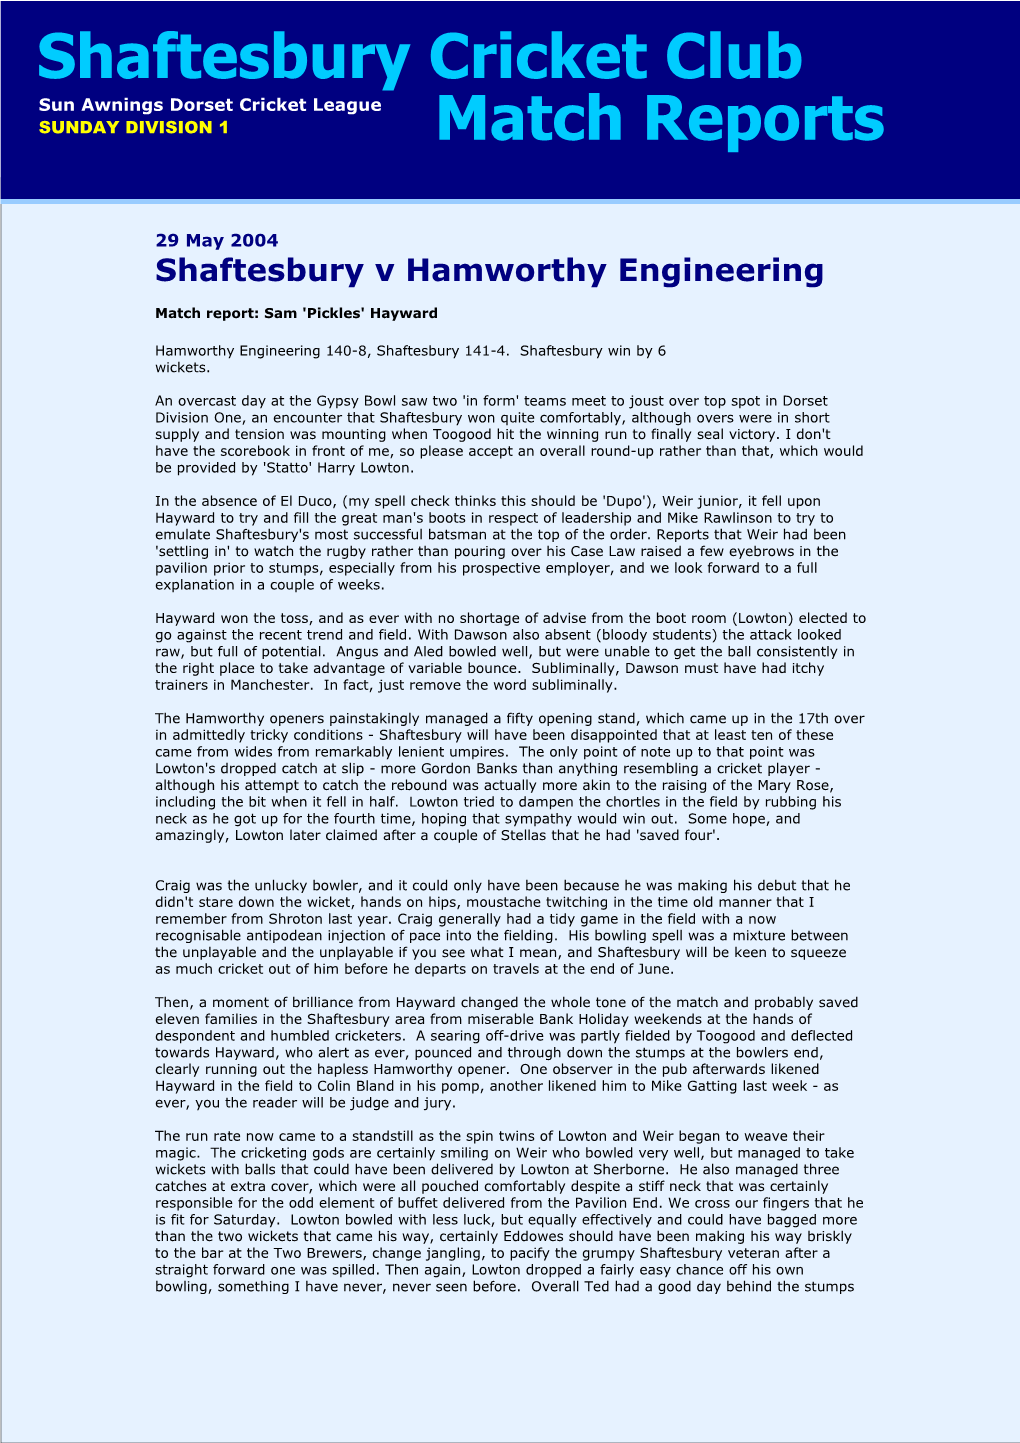 Shaftesbury V Hamworthy Engineering